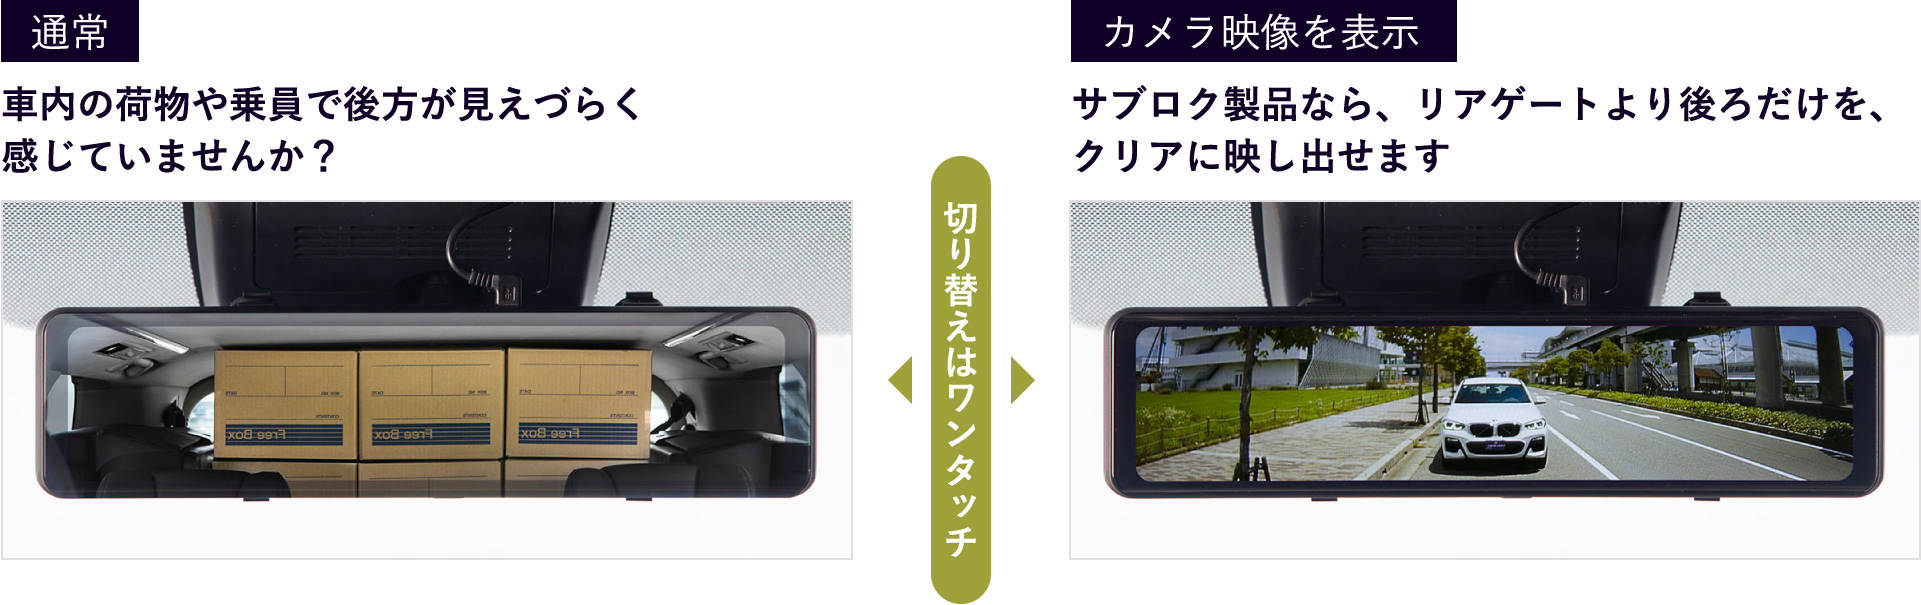 サブロク 前後2カメラ デジタルインナーミラー型ドライブレコーダー トヨタの事ならトヨタモビリティ中京へ‼